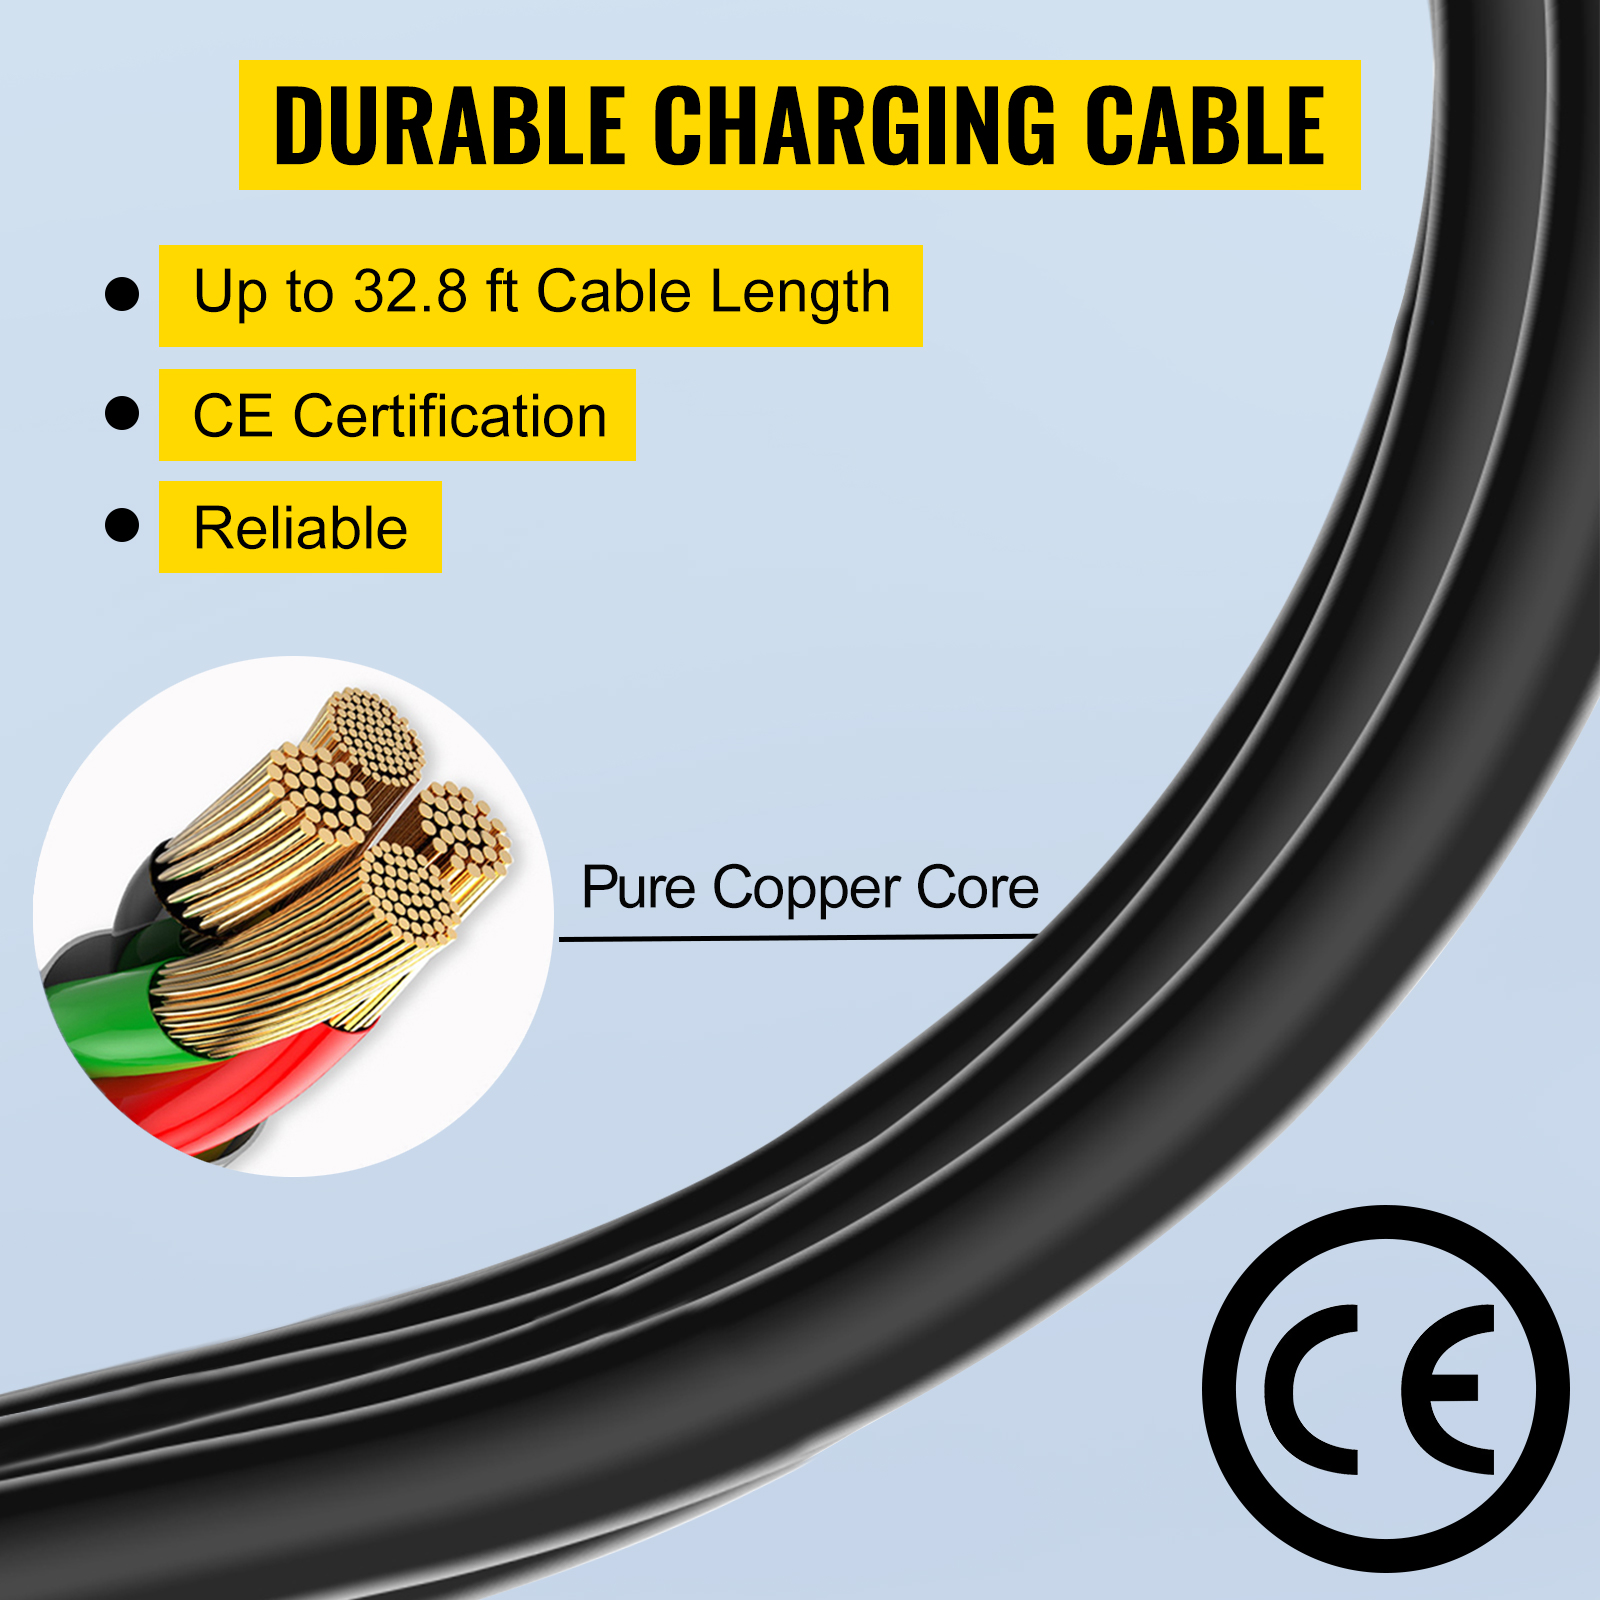 Зарядний кабель для електромобілів VEVOR 16 A для стандарту ЄС, 7,5 м зарядна станція для електромобіля з 3-контактним штекером Schuko, 3,6 кВт електромобіль, 250 В IP54 з'єднання з цифровим РК-екраном та сертифікат CE